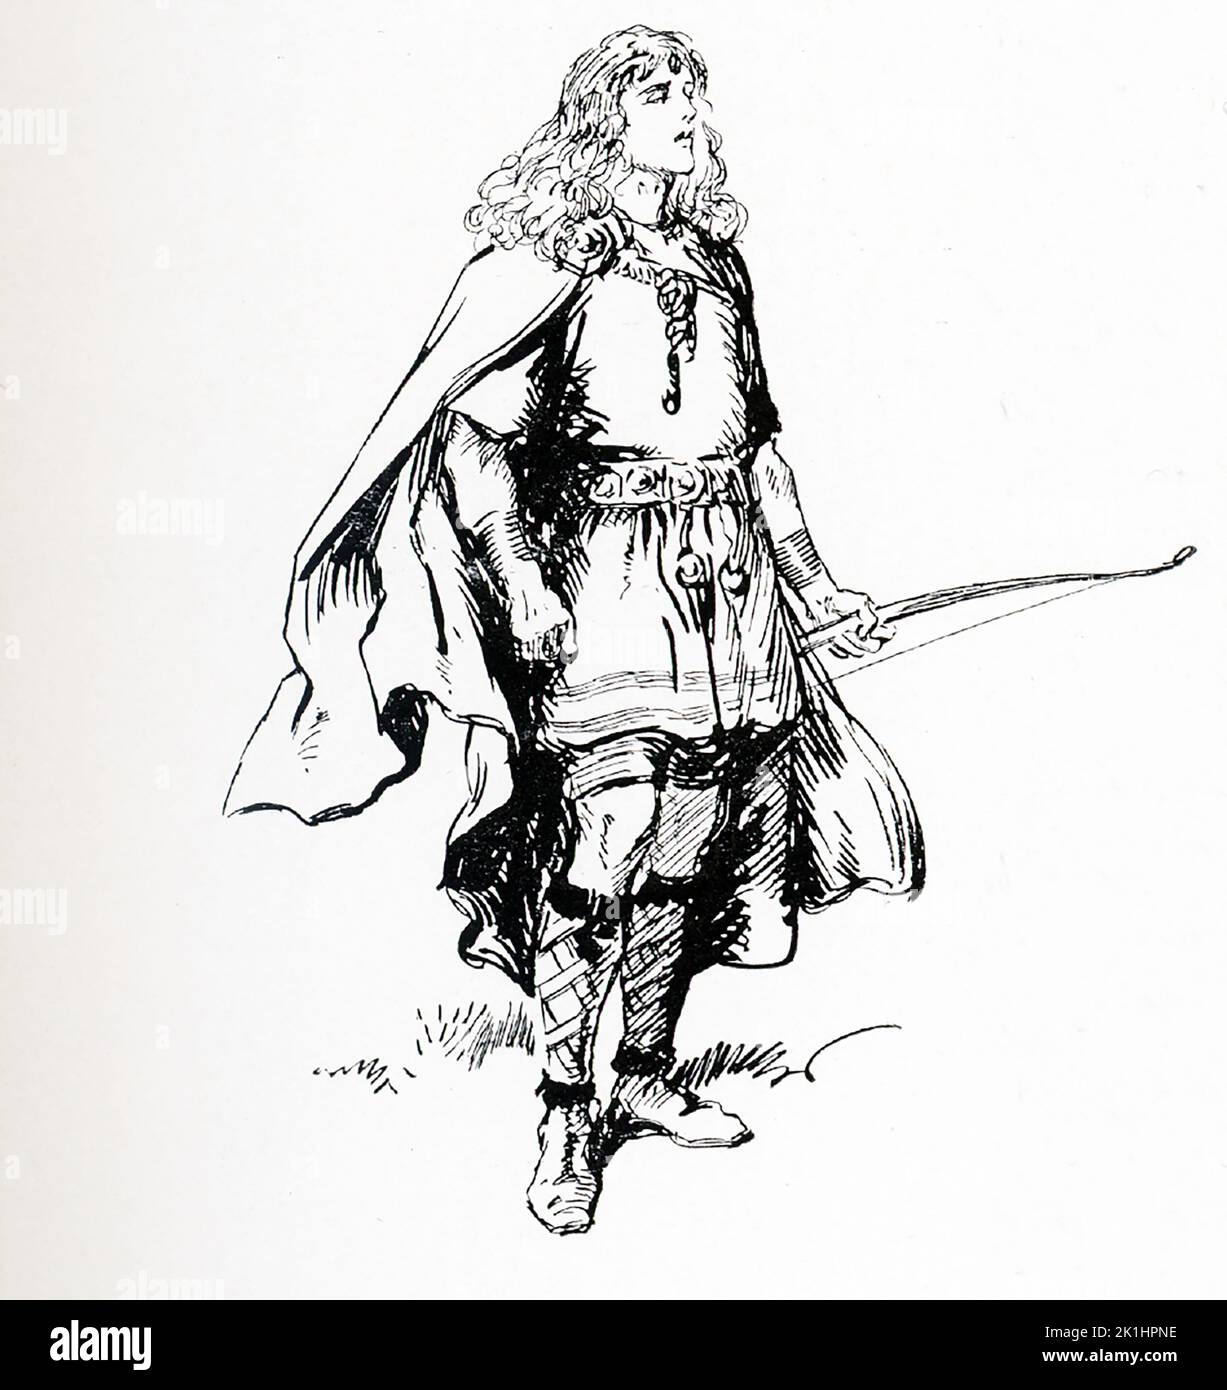 Nach der nordischen Mythologie ist Balder (auch Baldr und Baldur) der nordische gott des Friedens und des Lichts und Frühlings. Der Sohn des mächtigen Odin, wurde von den Aesir, den nordischen Göttern, geliebt. Diese Illustration von Gordon Browne stammt aus dem Jahr 1913. Stockfoto